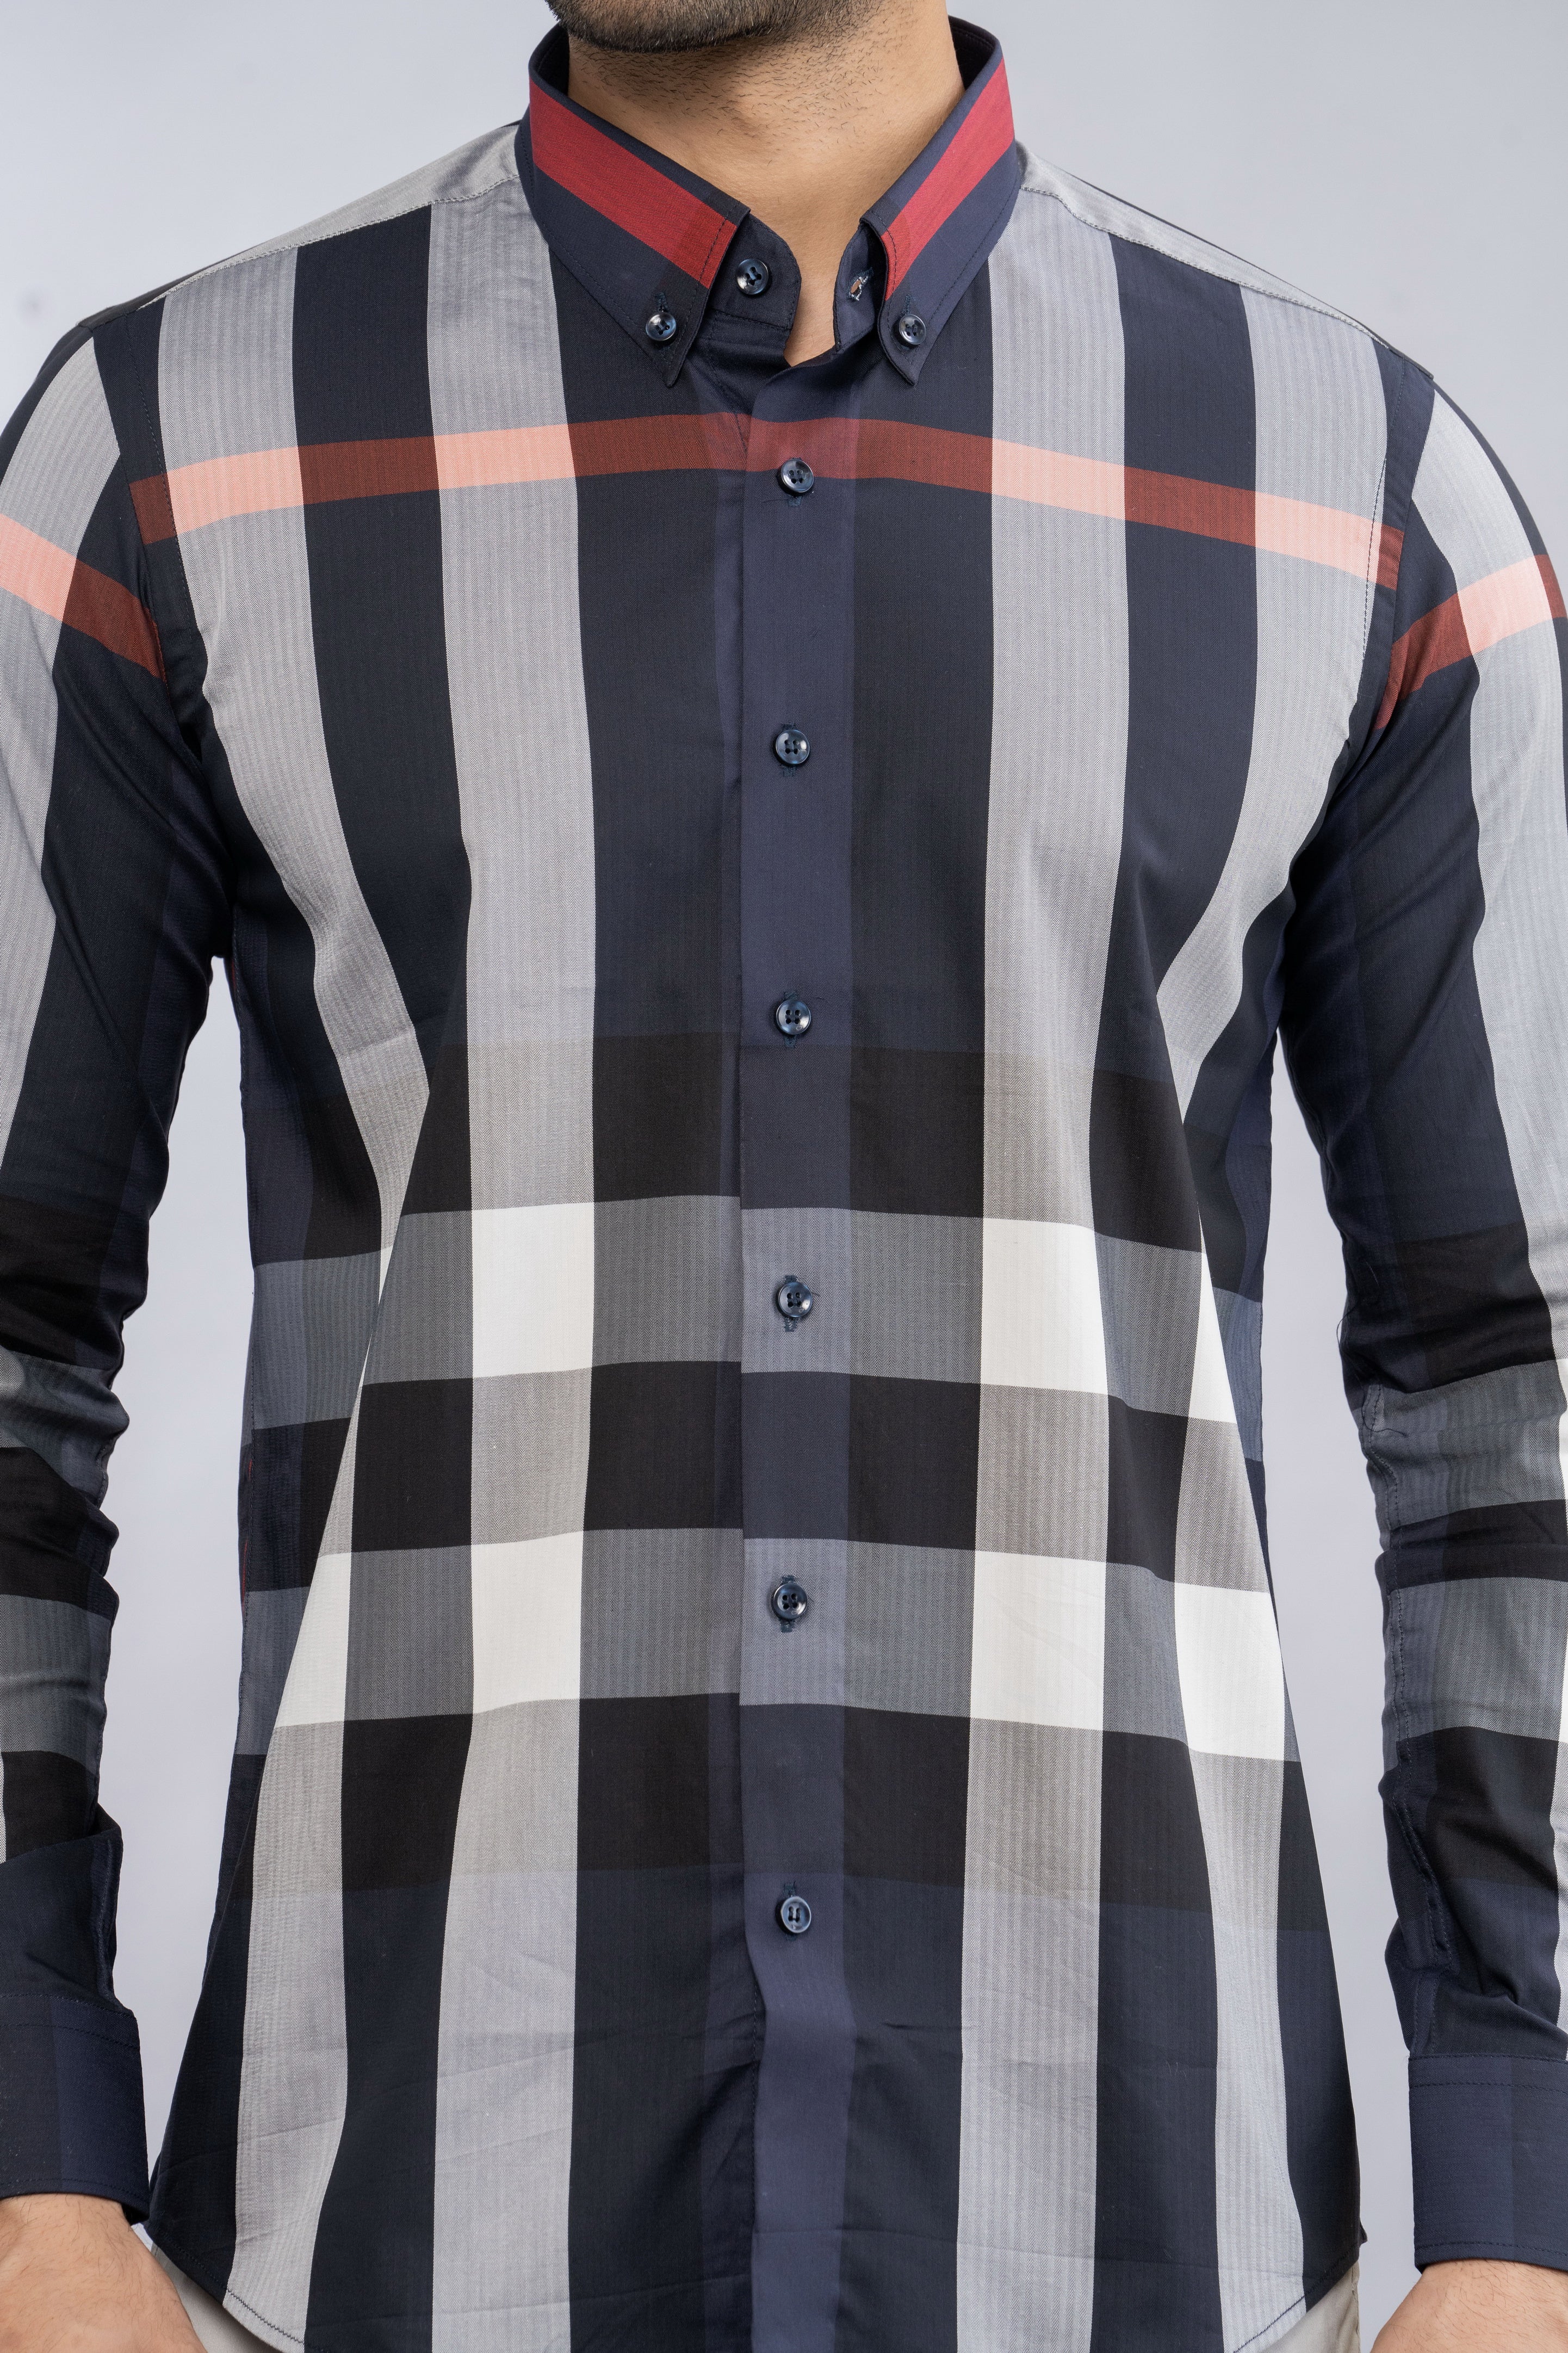 Burberry Men's Willem Check Cotton Button-Down Shirt - ShopStyle